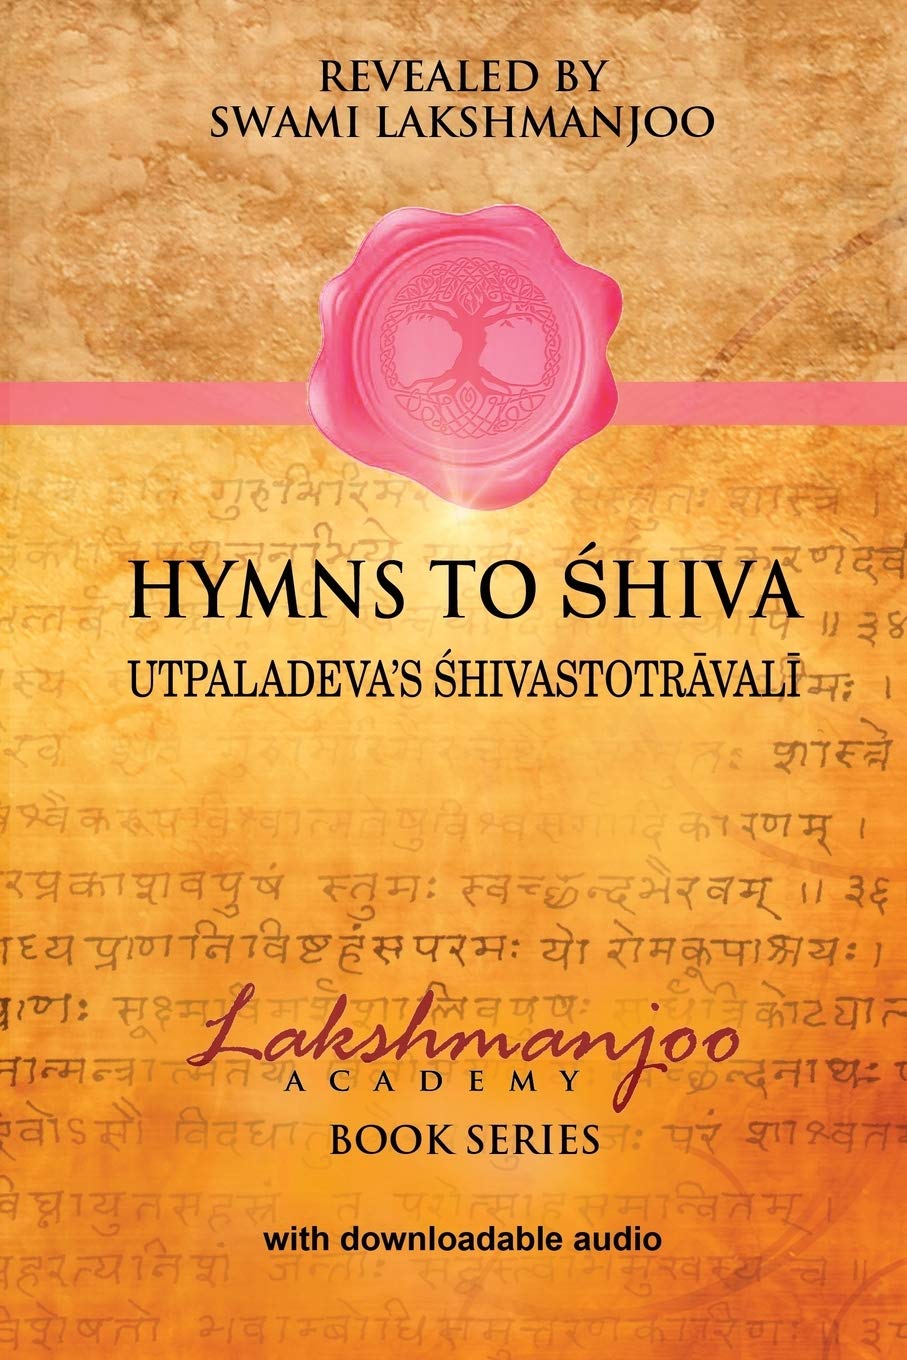 Hymns to Shiva